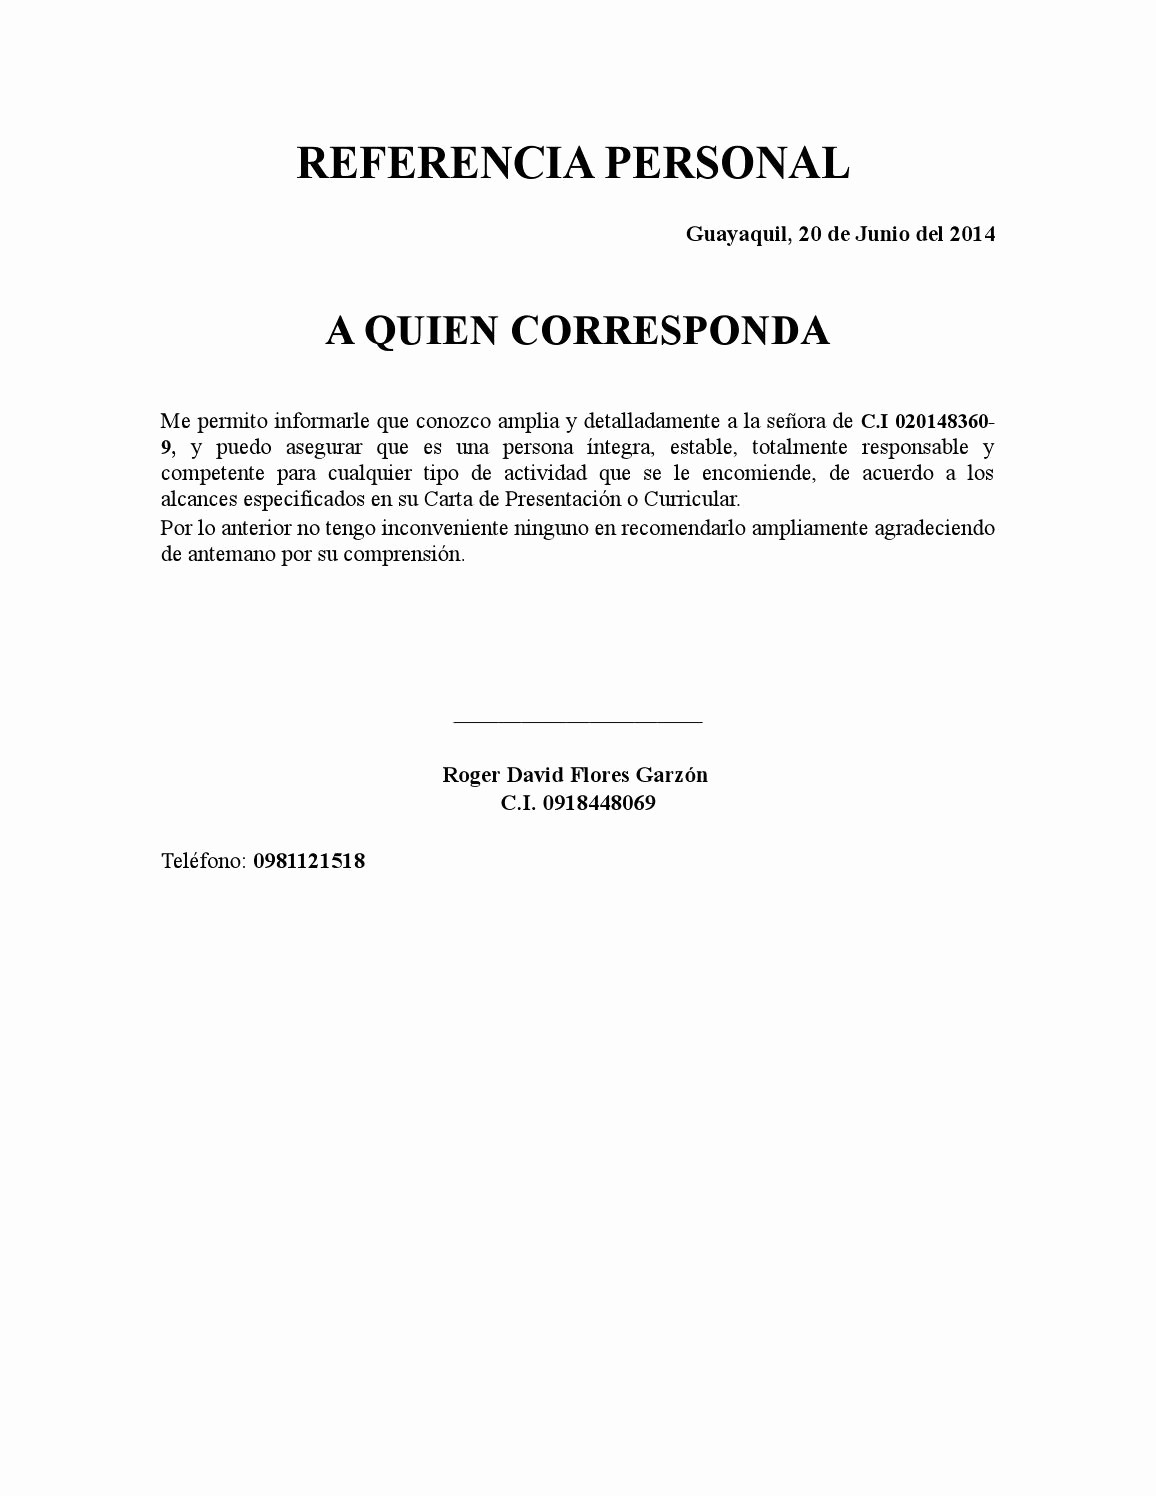 Formatos Carta De Recomendacion Laboral Elegant Referencia Personal Copia by Roger David Flores Garzon issuu